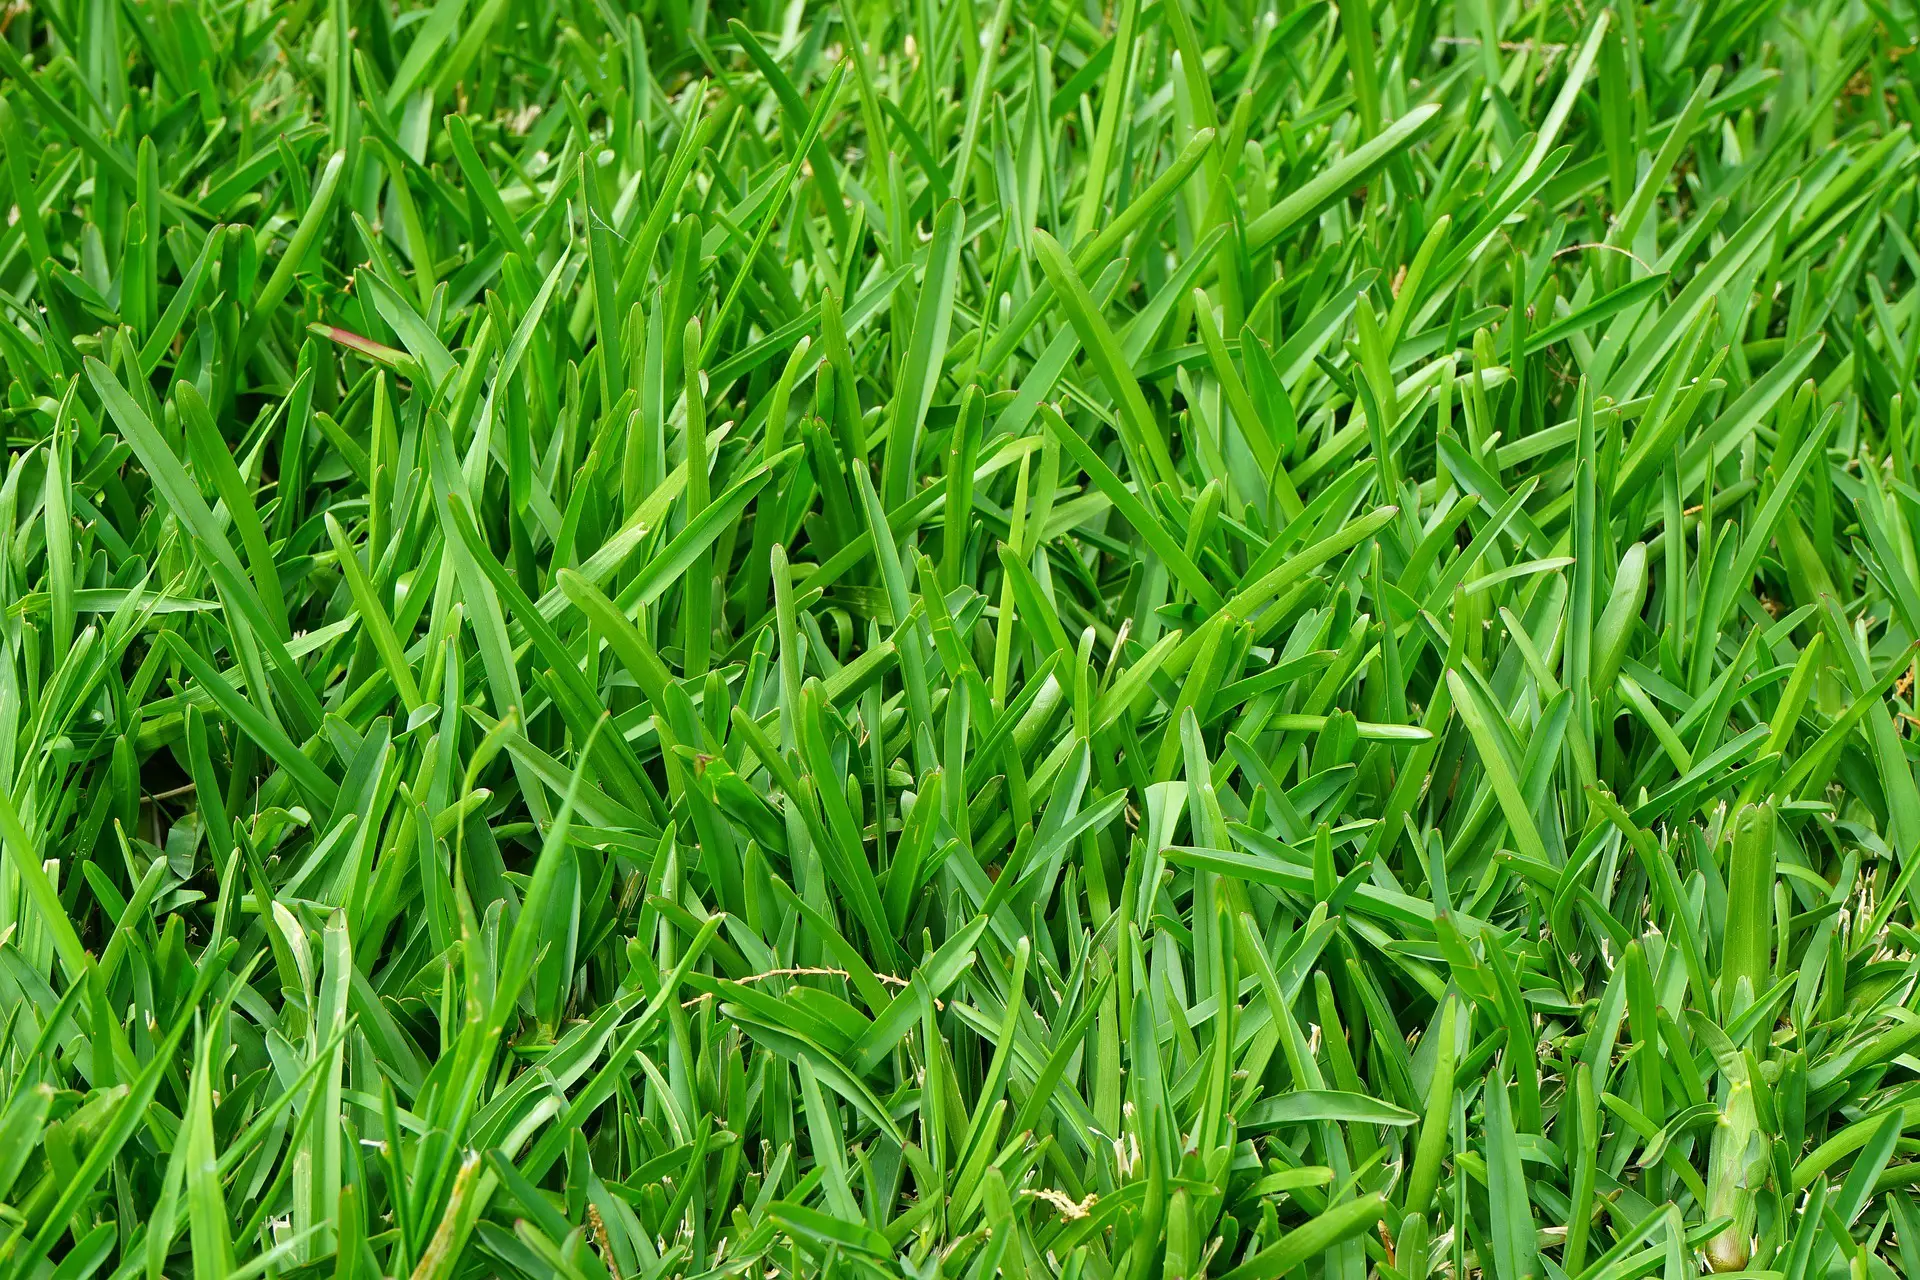 Fescue Grass